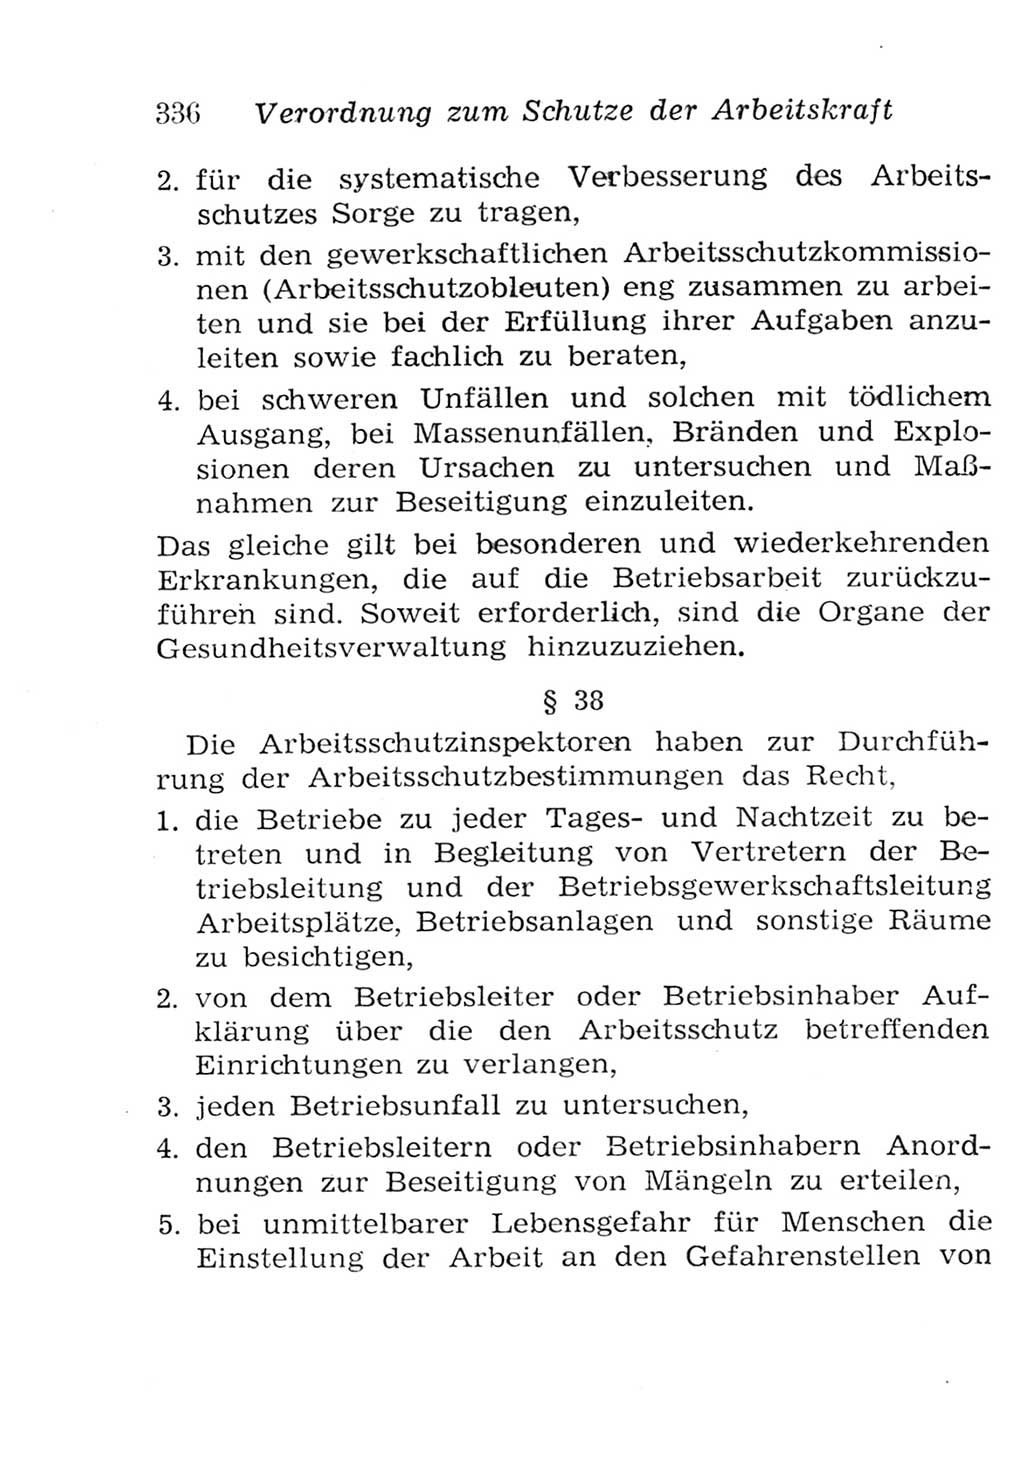 Strafgesetzbuch (StGB) und andere Strafgesetze [Deutsche Demokratische Republik (DDR)] 1957, Seite 336 (StGB Strafges. DDR 1957, S. 336)